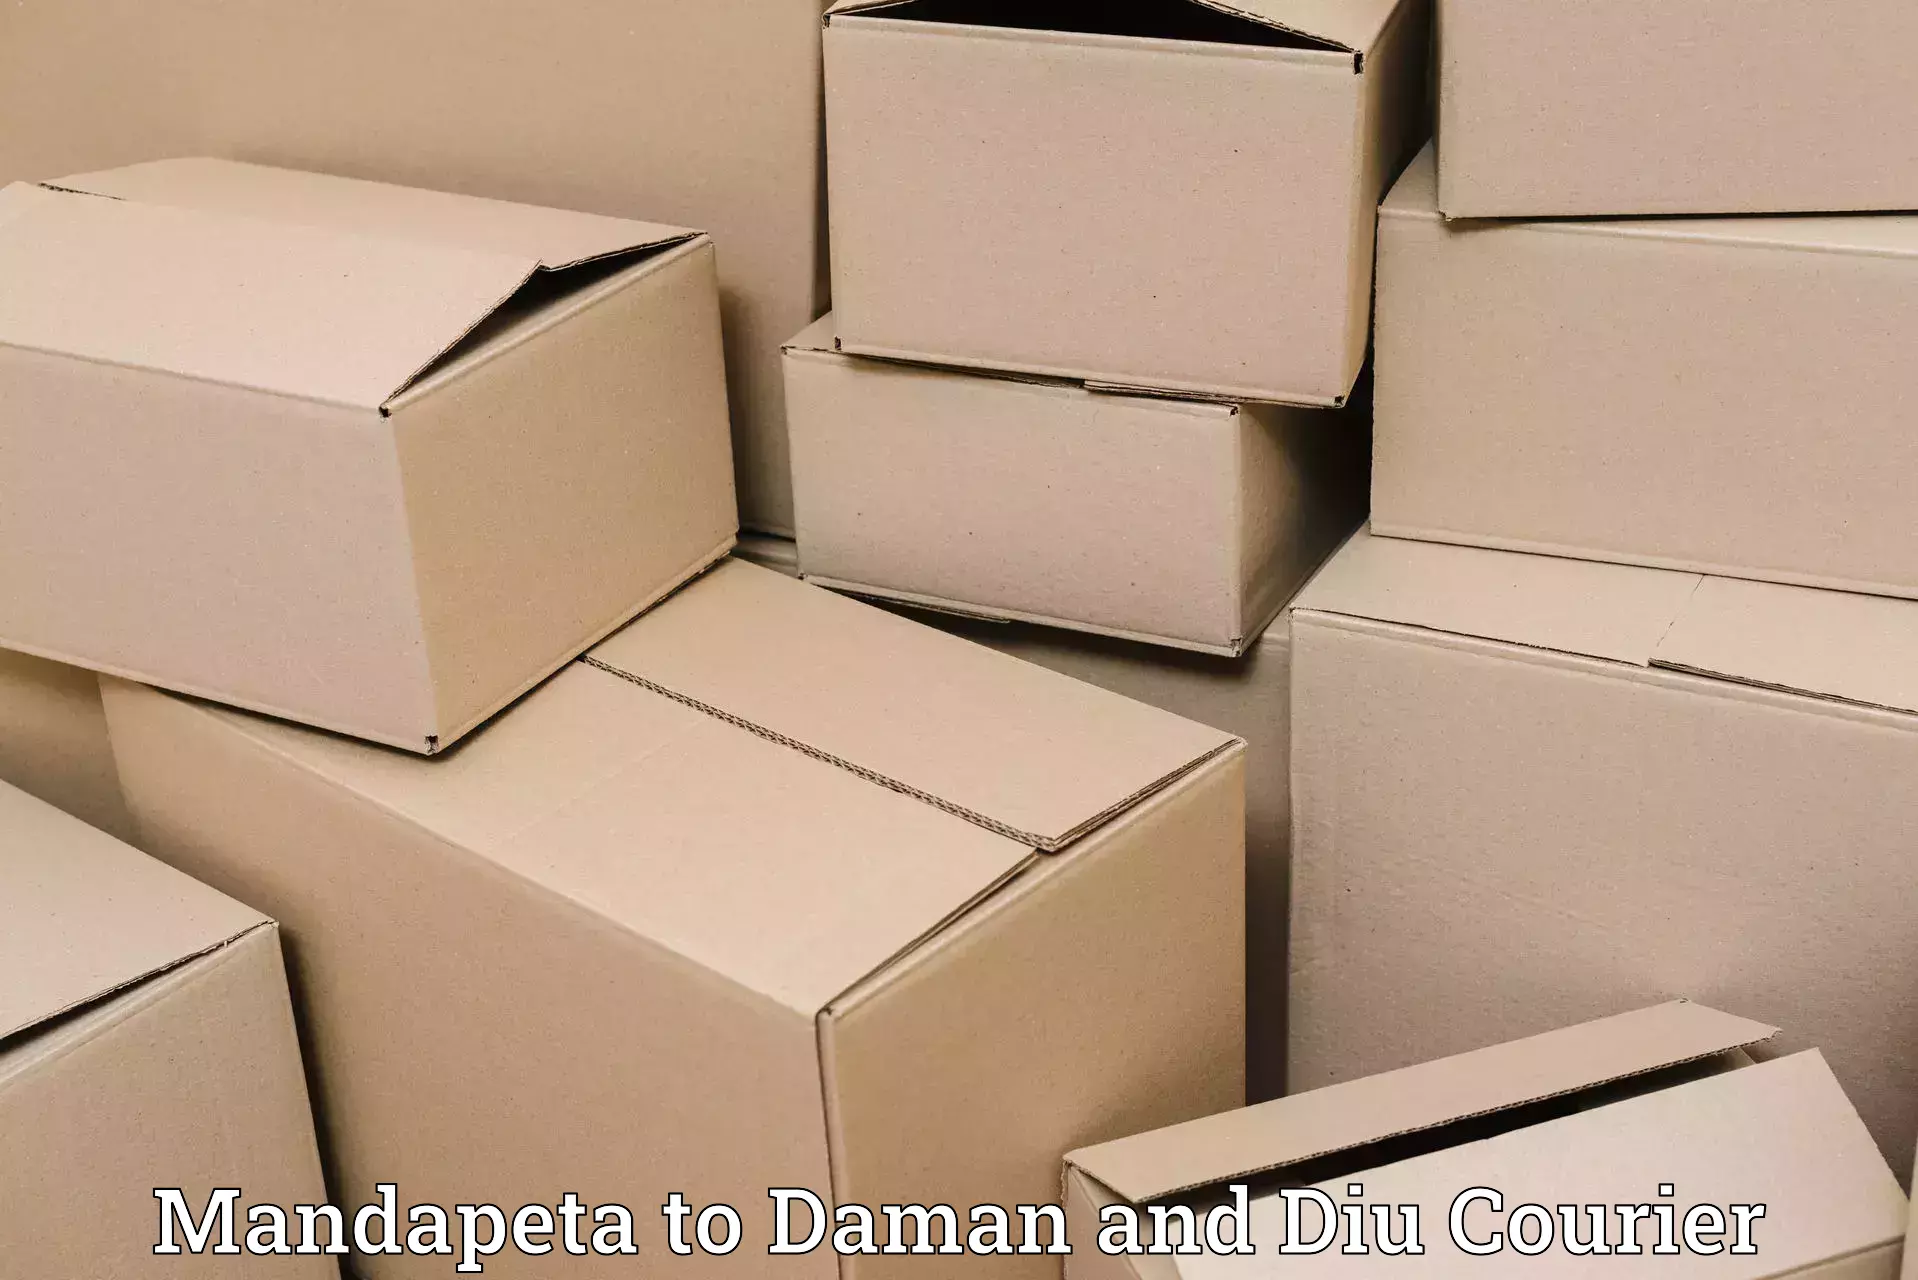 Express shipping in Mandapeta to Diu